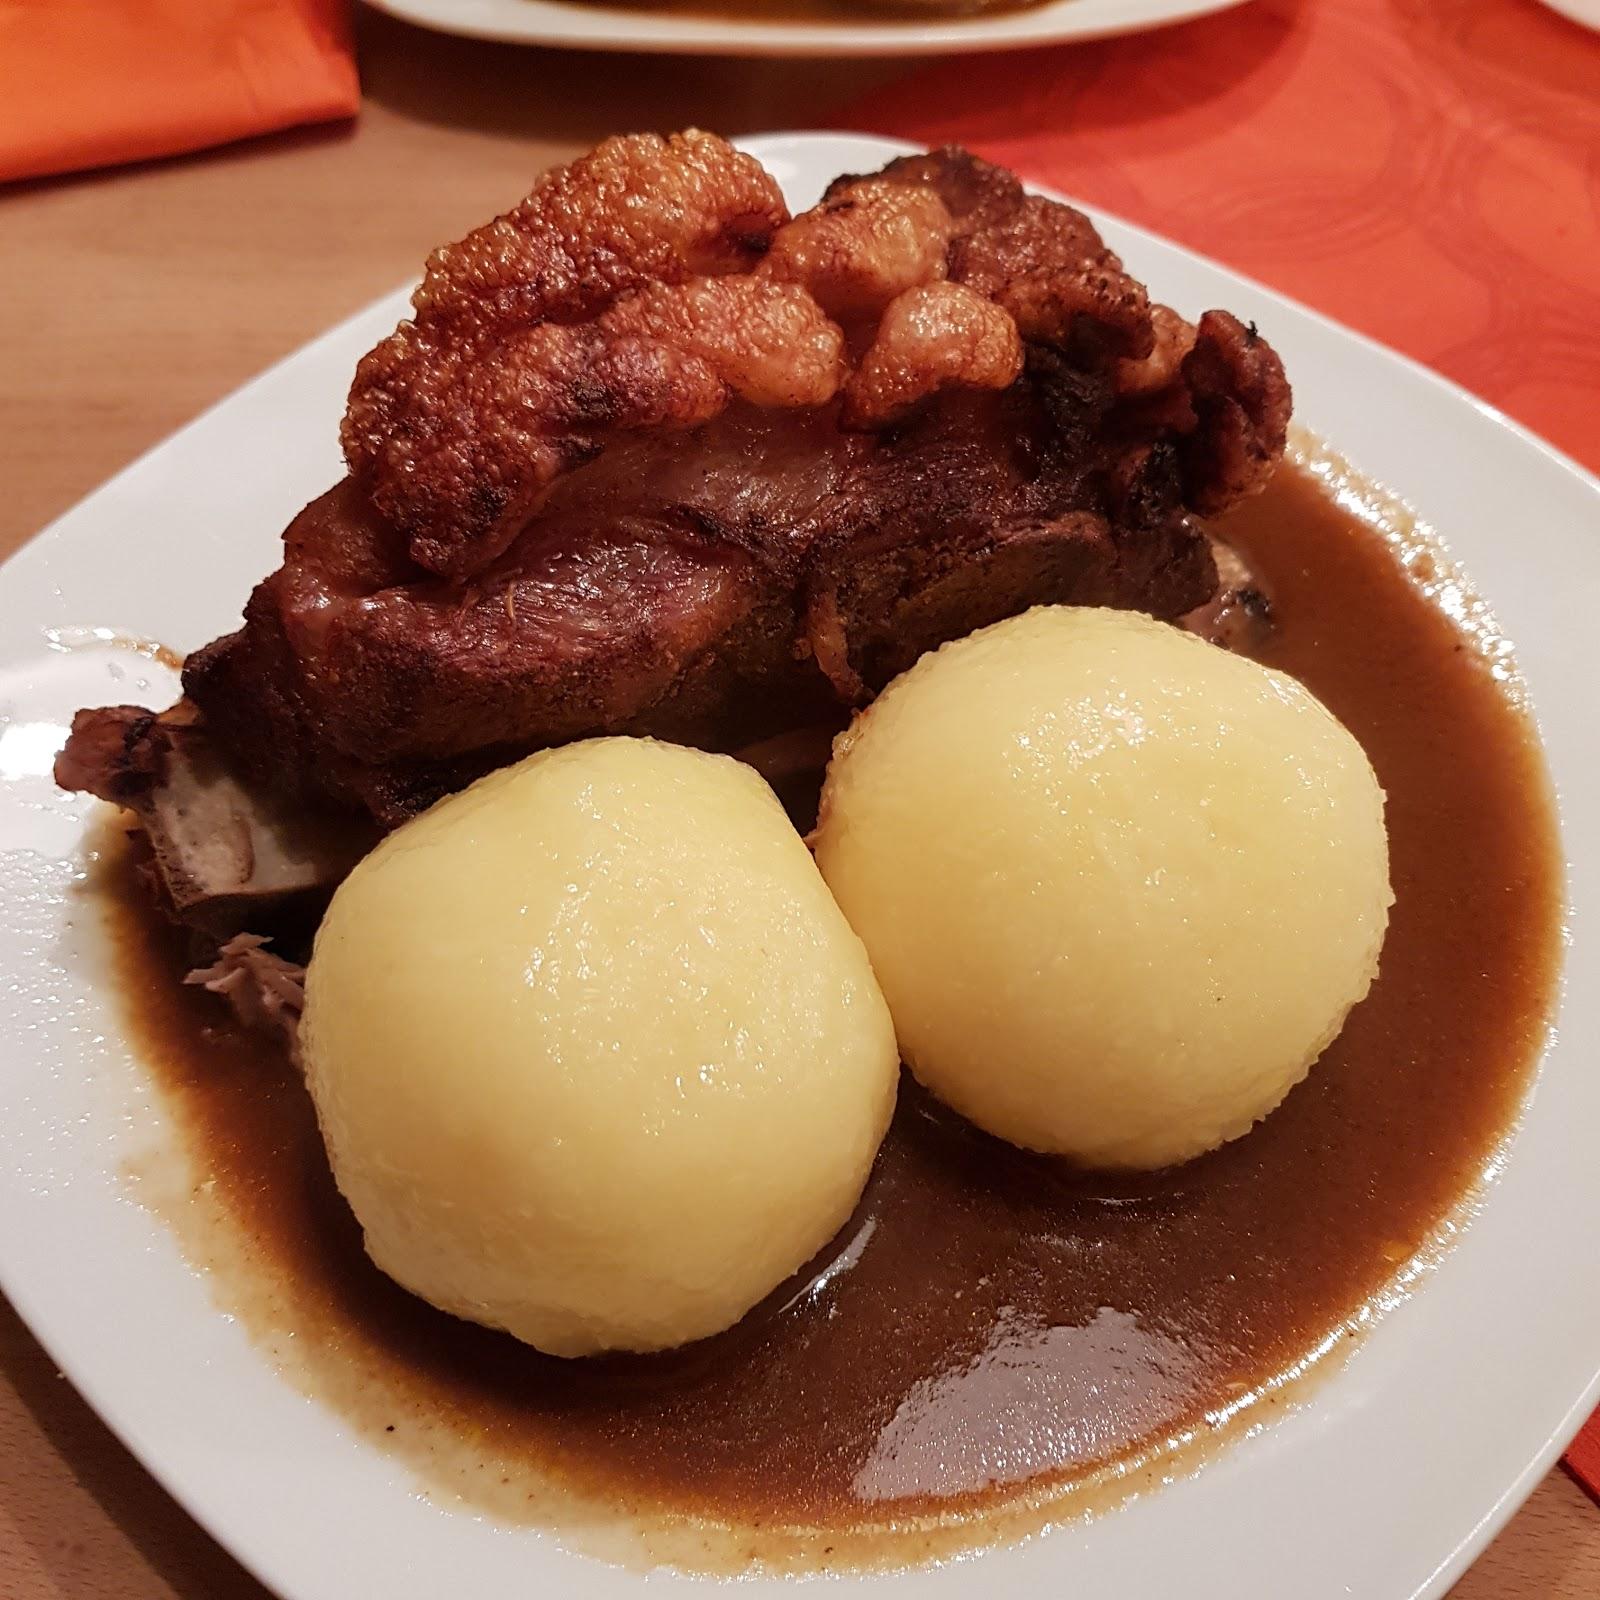 Restaurant "Alte Dorfschänke" in Abenberg